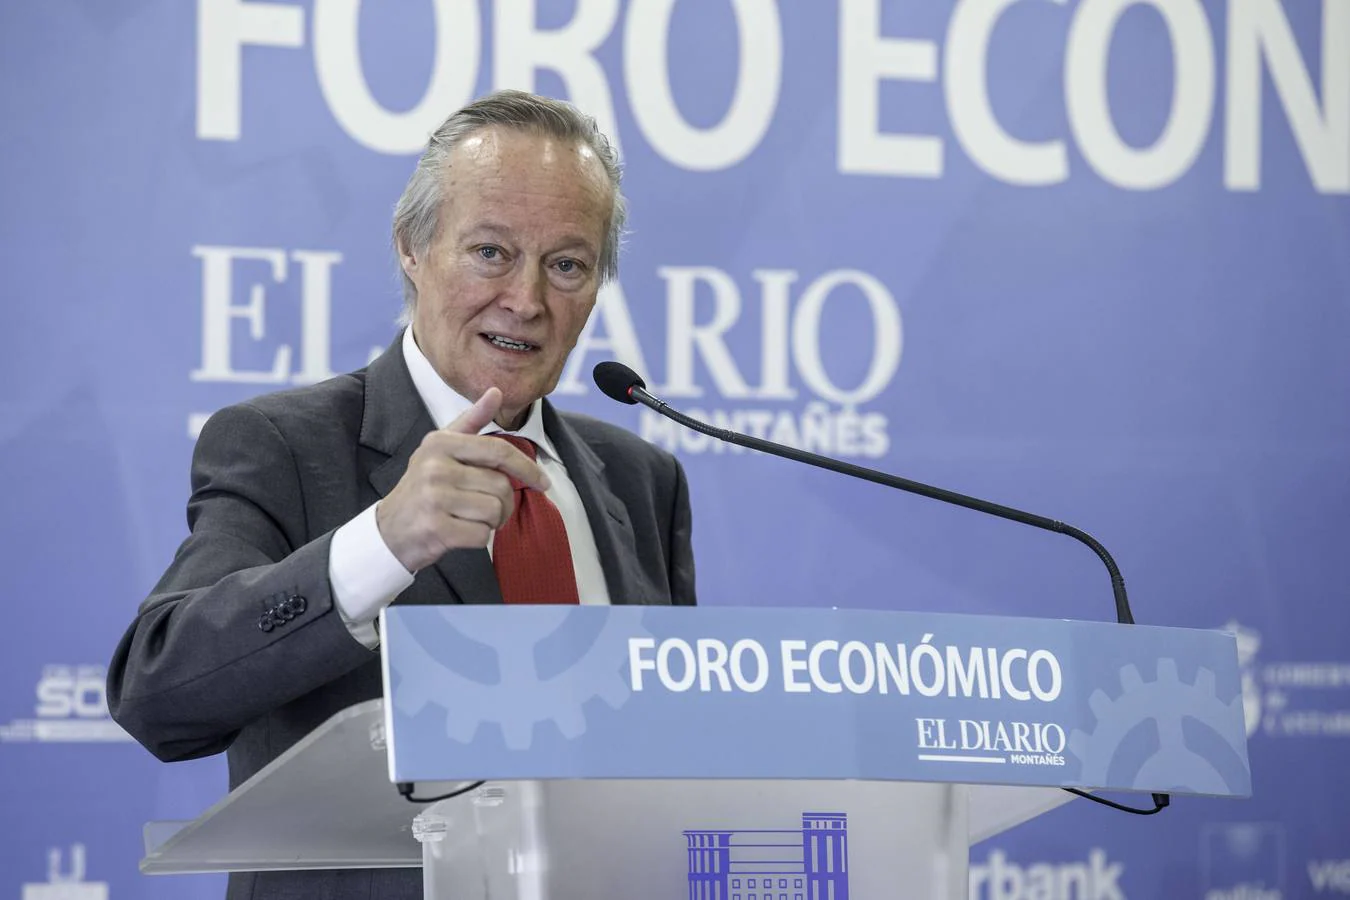 Foro Económico: Josep Piqué